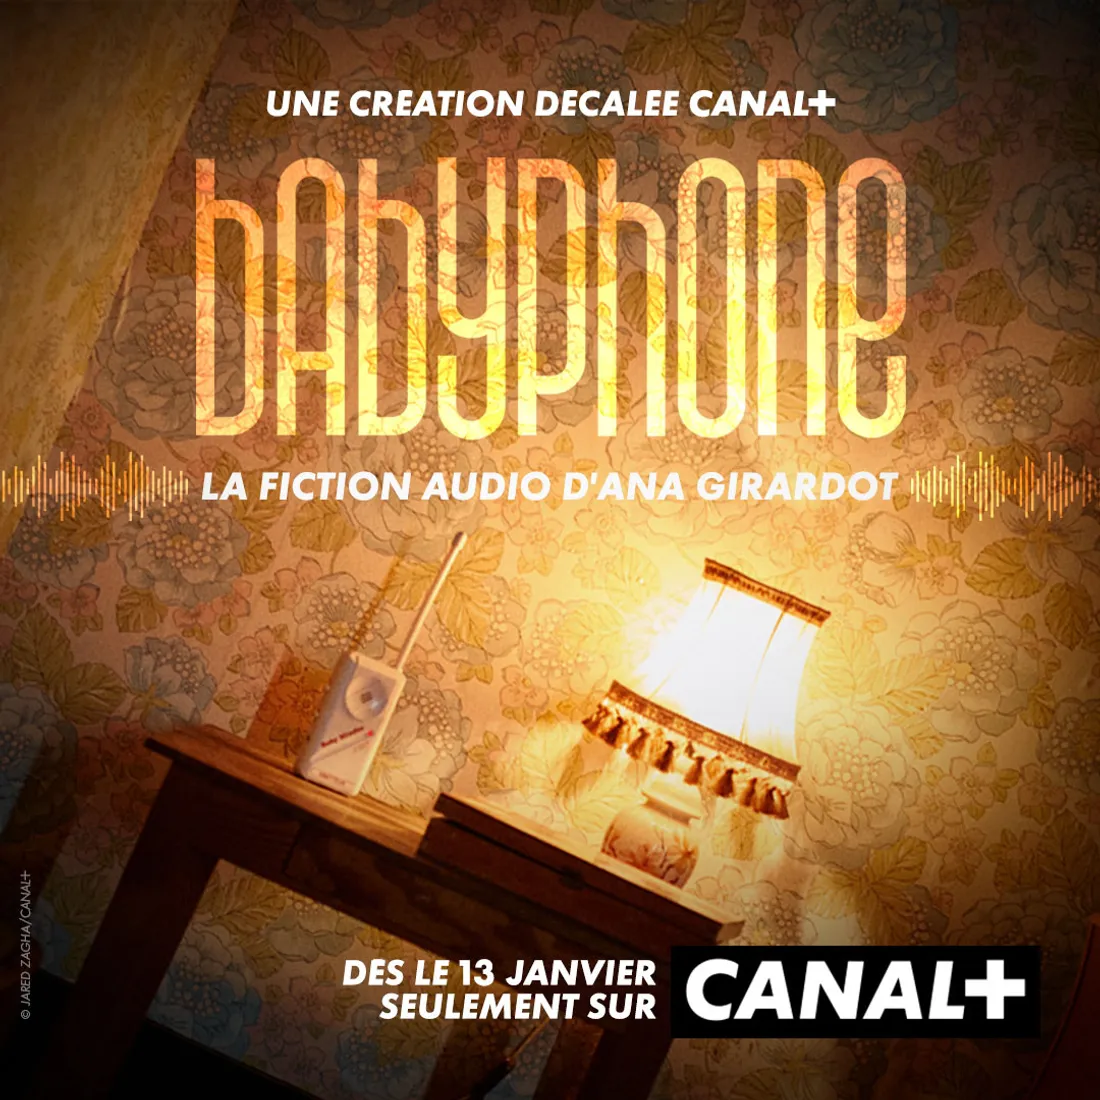 Vous aimez vous faire peur ? Babyphone, le nouveau thriller audio de Canal+ est fait pour vous ! 